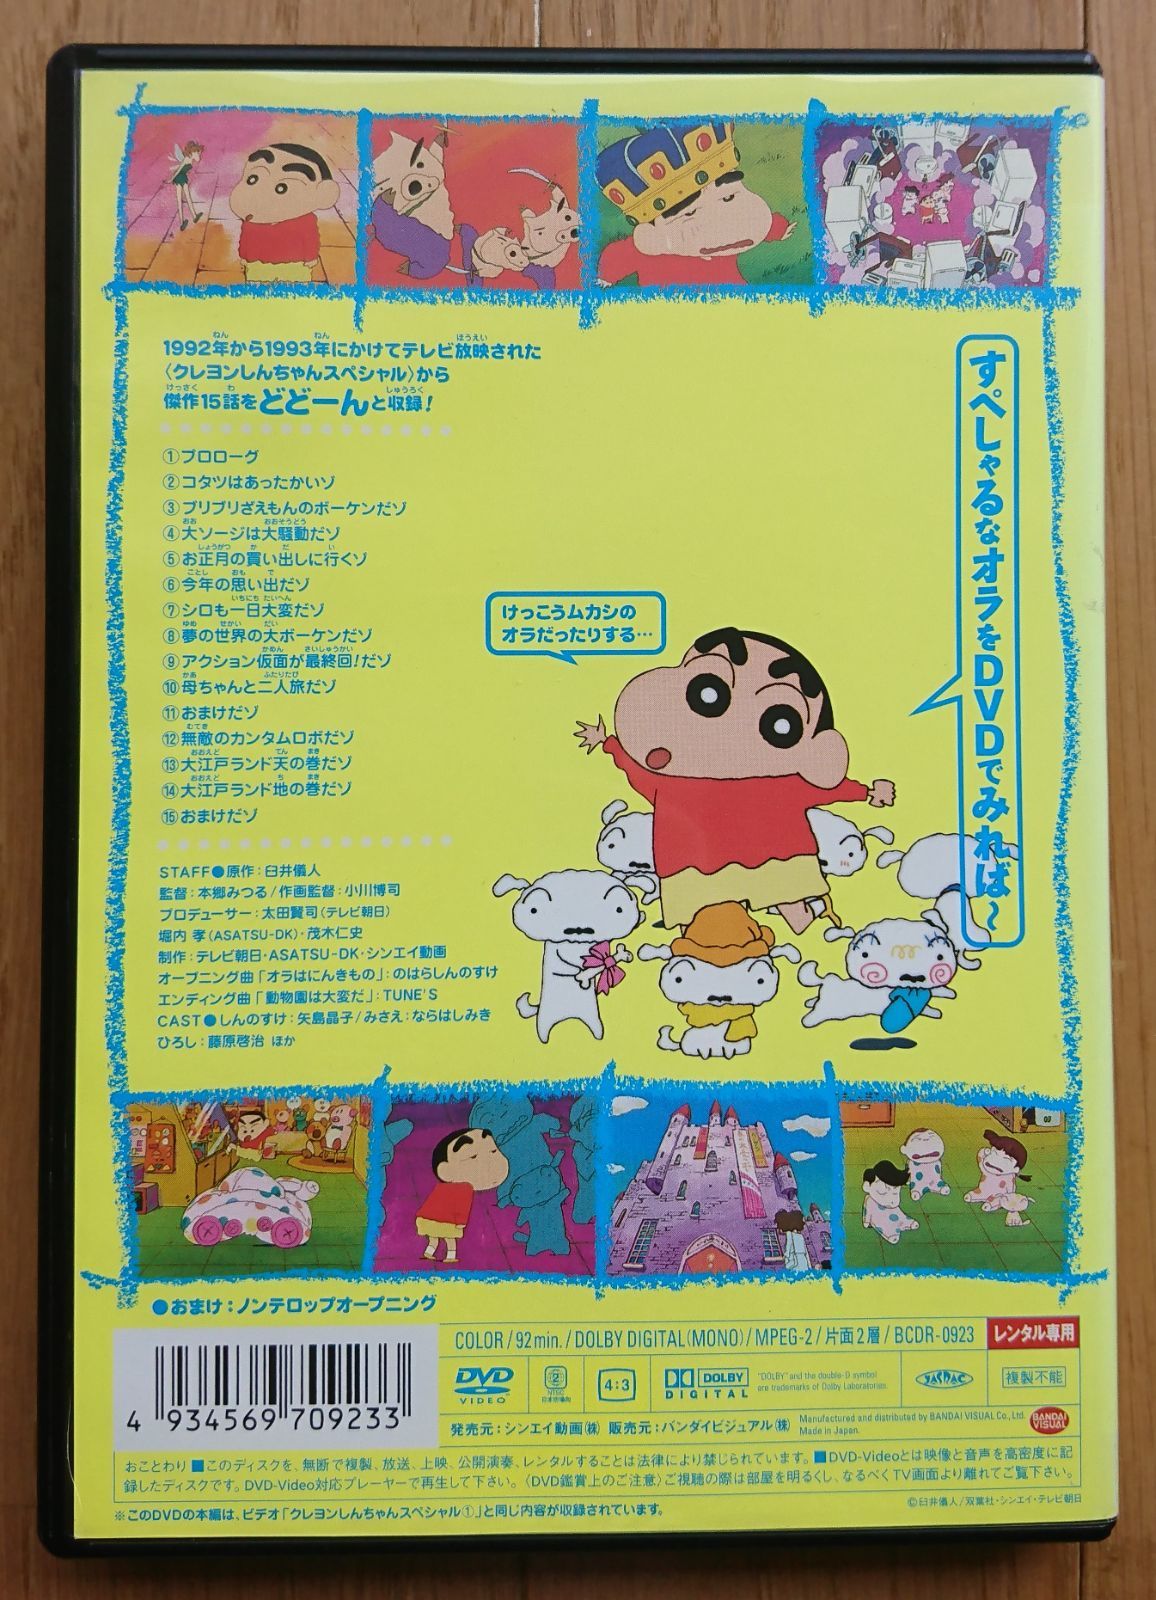 レンタル版DVD】クレヨンしんちゃん スペシャル 1 ※ジャケット傷みあり - メルカリ